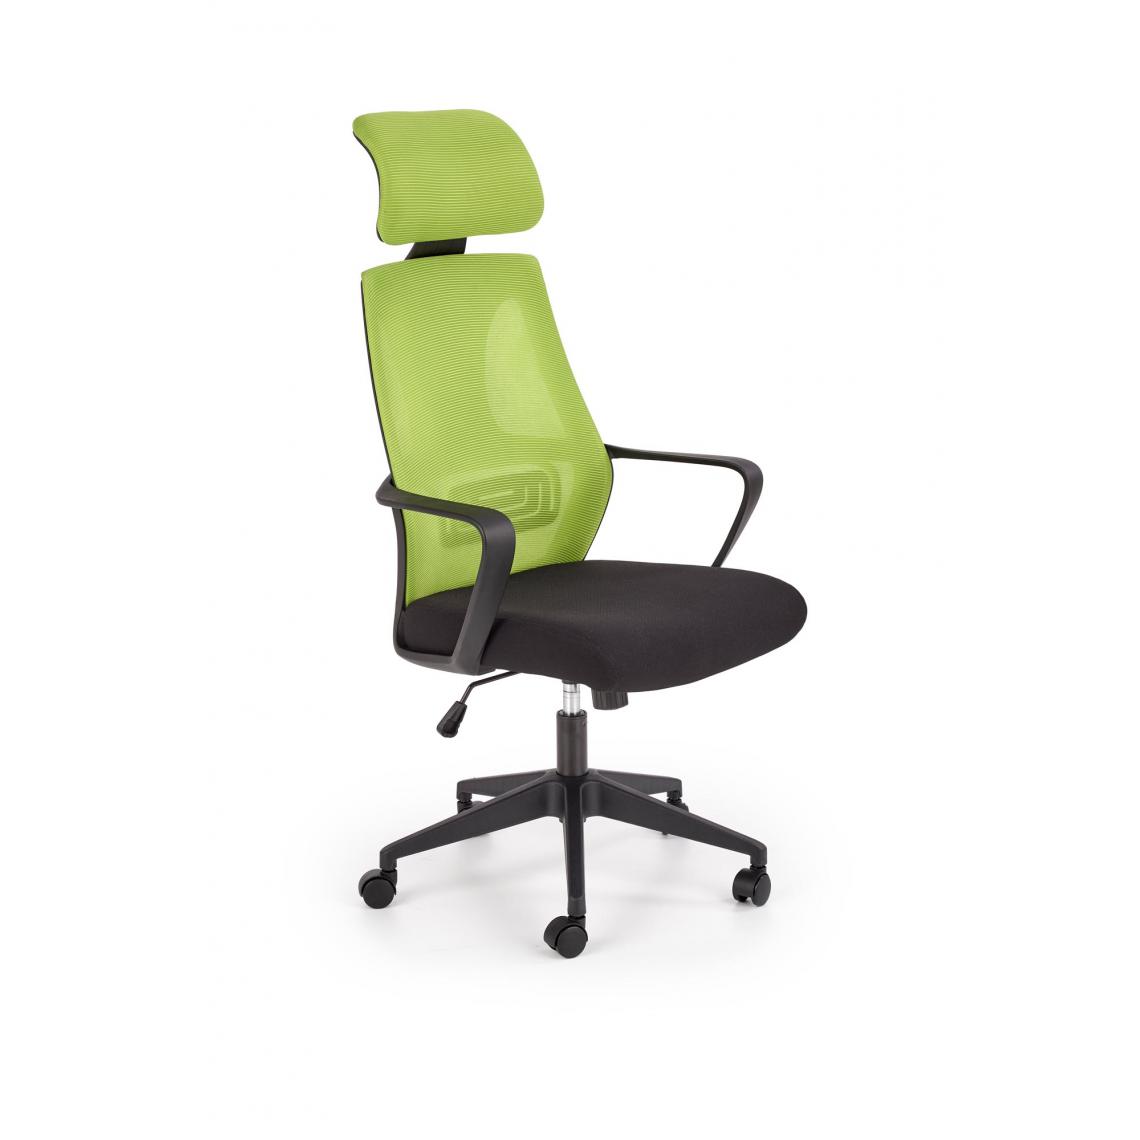 Hucoco - JAVIER - Fauteuil pivotant style moderne bureau/chambre - 116-122x64x60 - Verrouillage du dossier - Chaise de bureau - Vert - Chaises